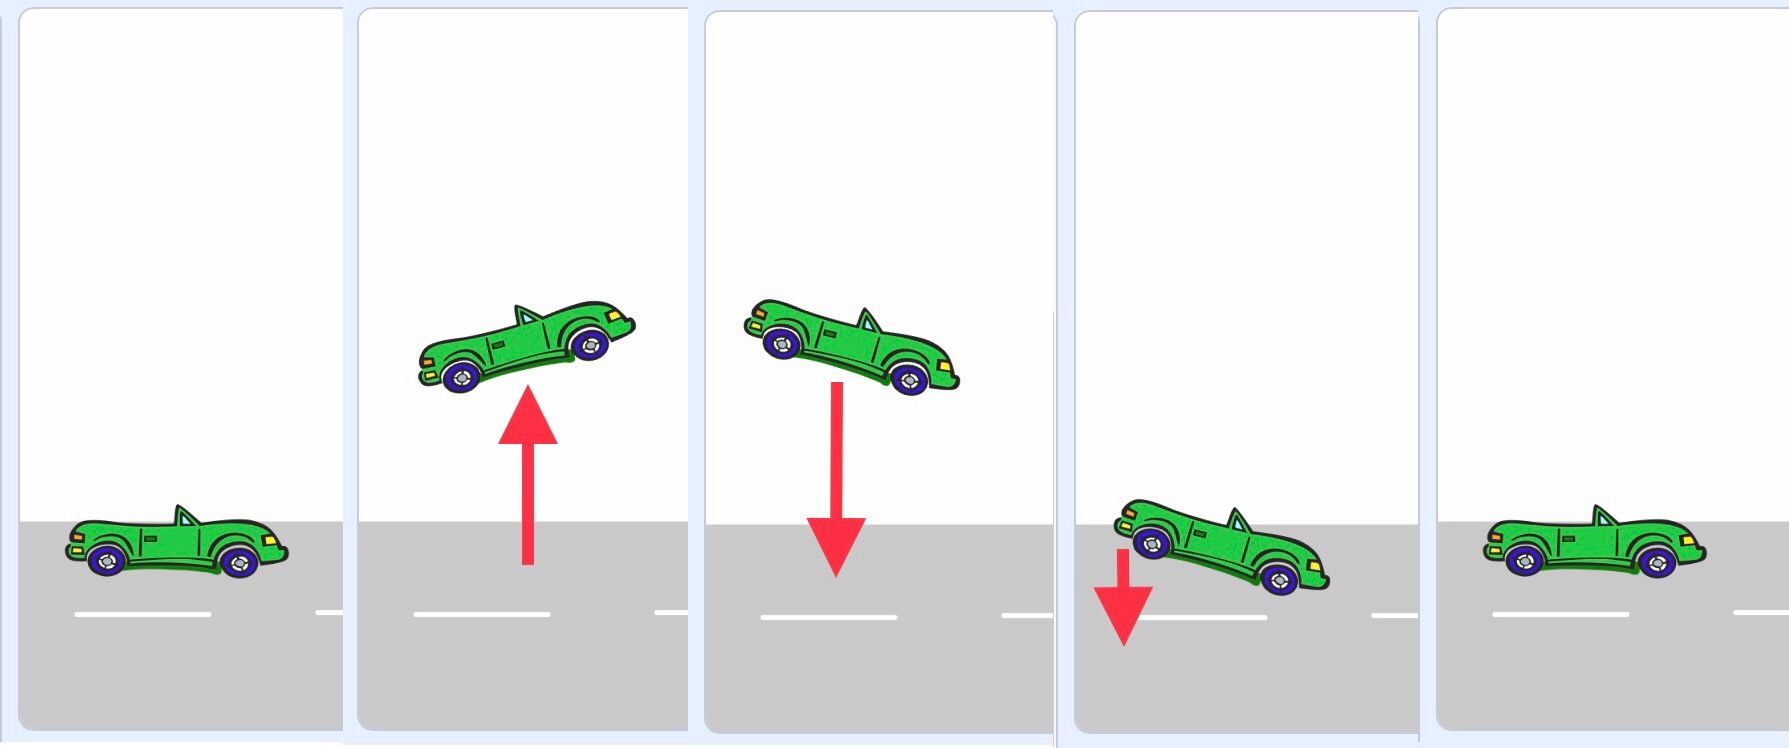 角度を変えながら車がジャンプする一連の画像